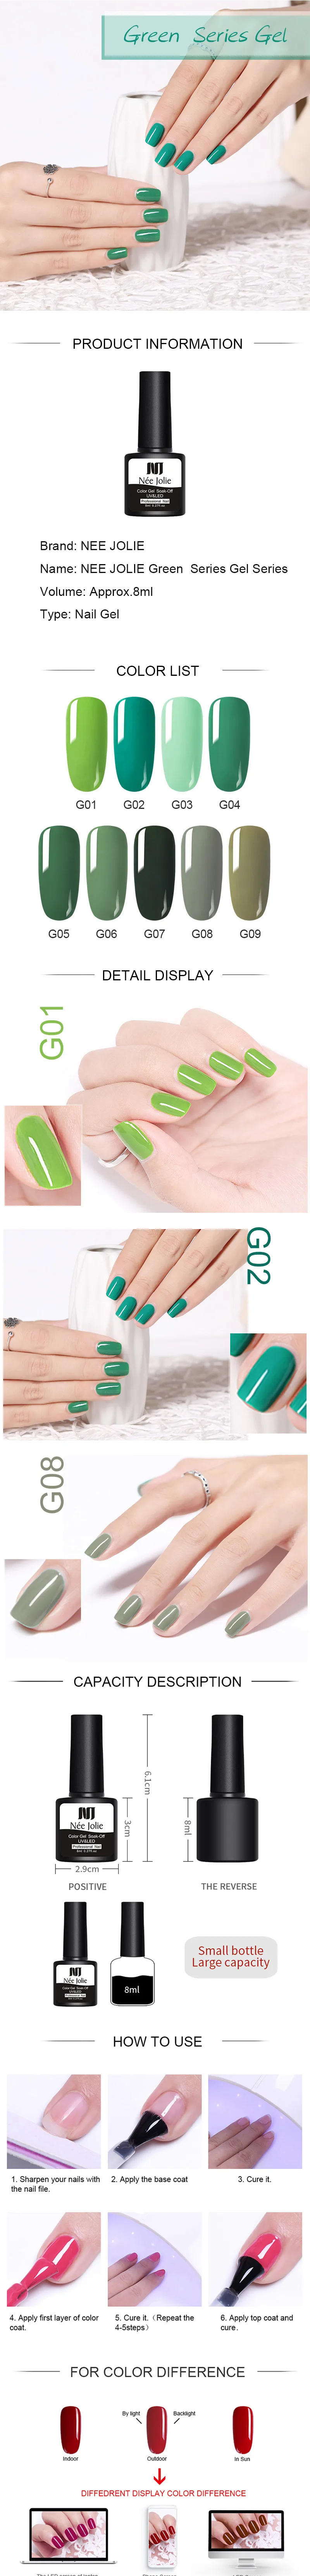 NEE JOLIE зеленая серия Цветной Гель-лак личная гигиена лак однократный цветной гель для ногтей 8 мл